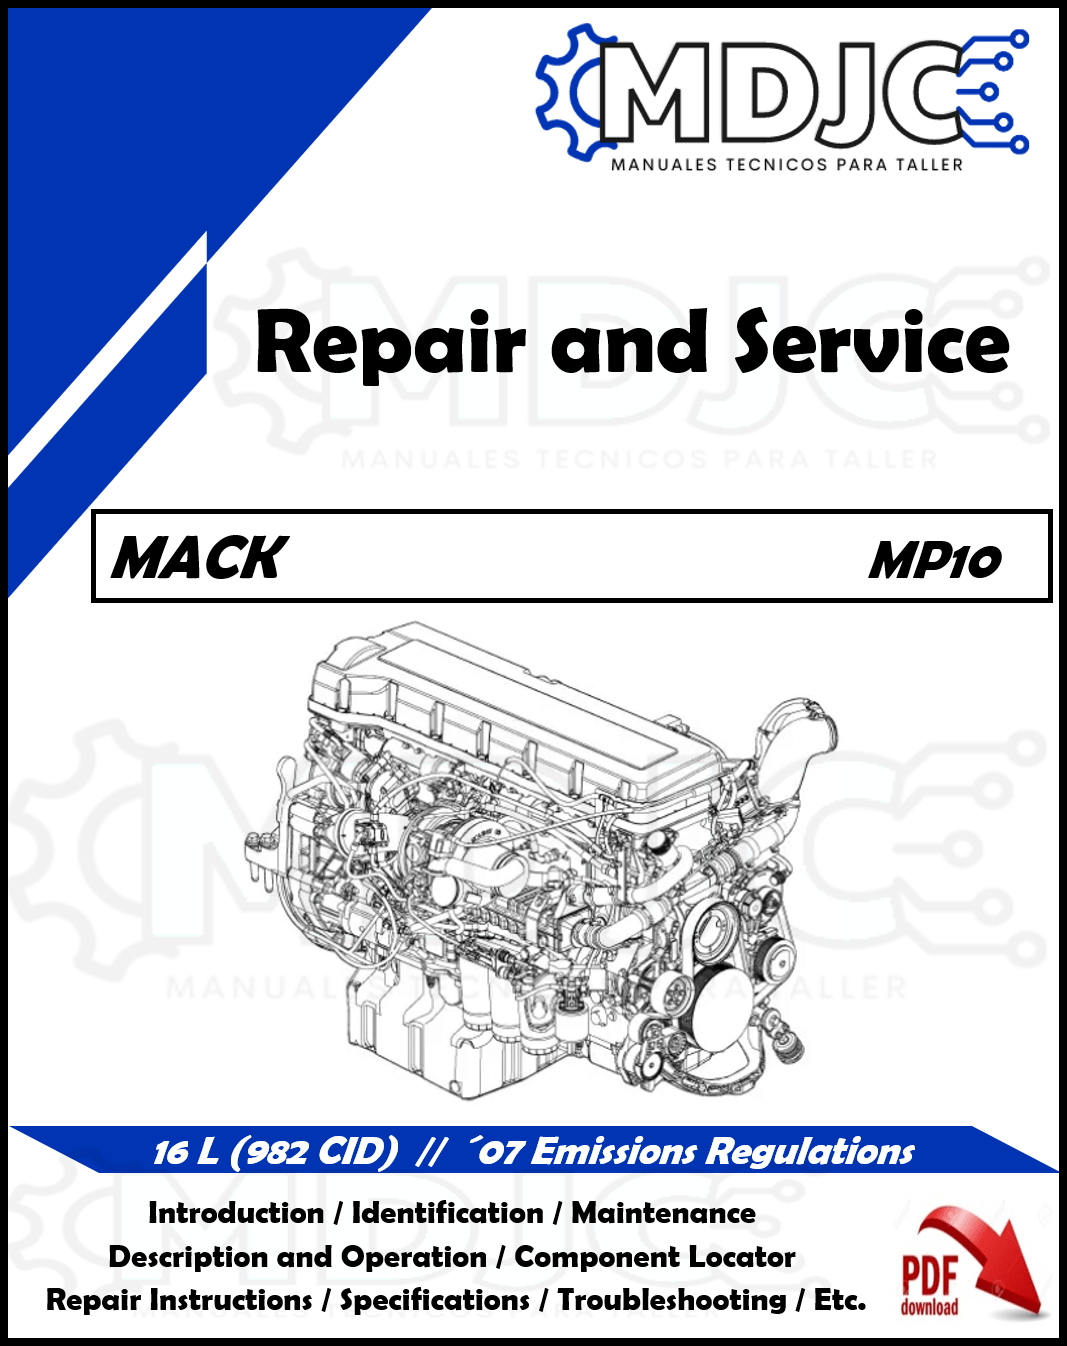 Manual de Taller (Reparación y Servicio) Motor Mack MP10 (16 L)